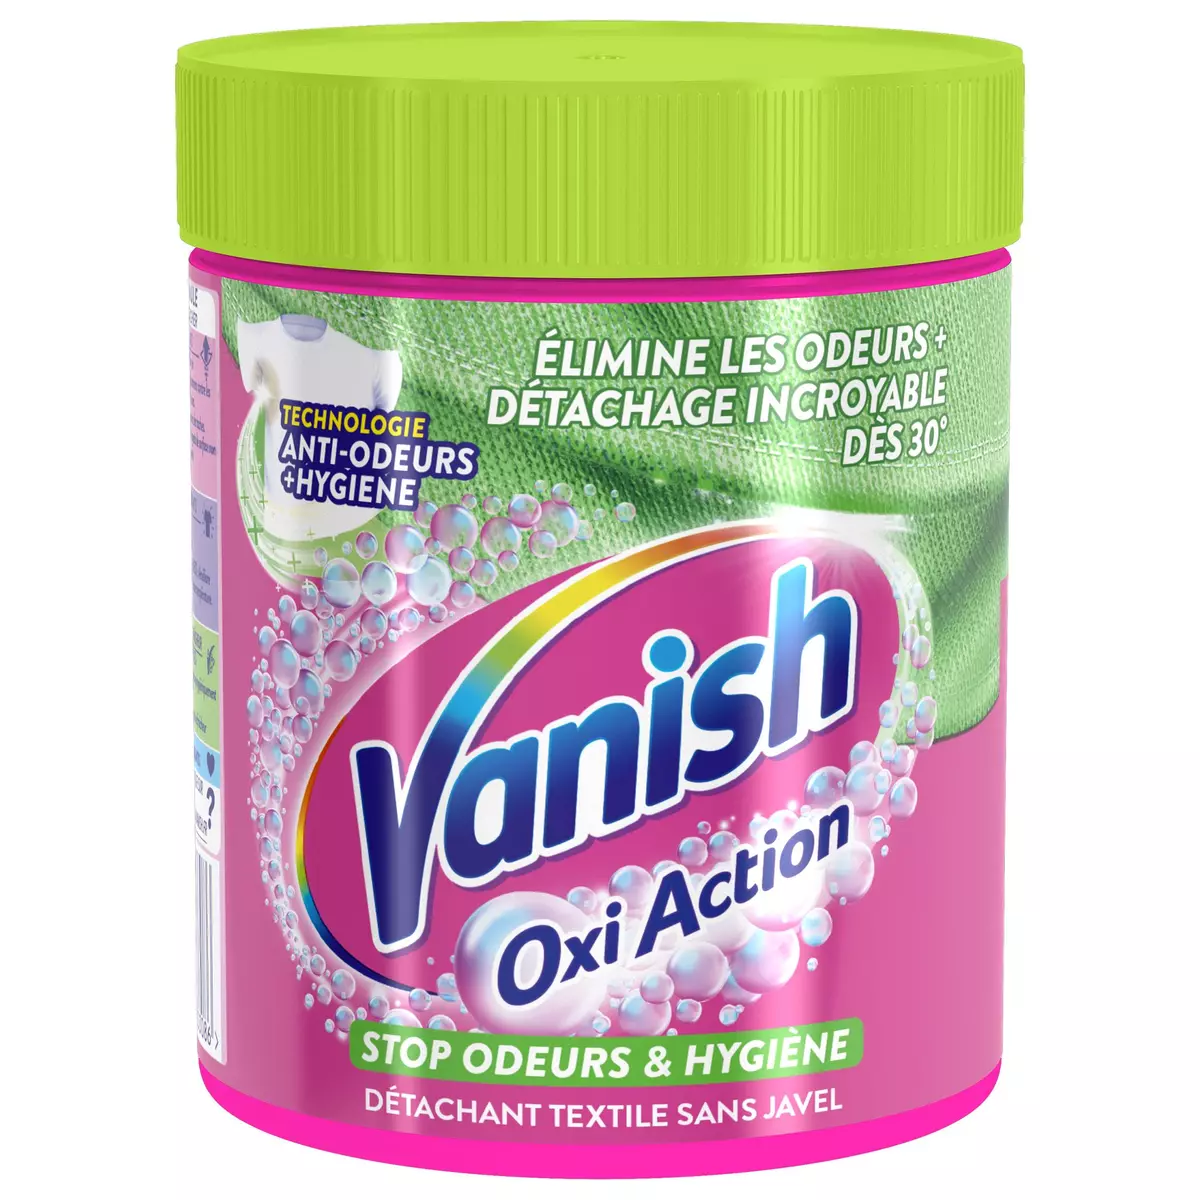 VANISH Oxi Action détachant textile stop odeur 470g pas cher 